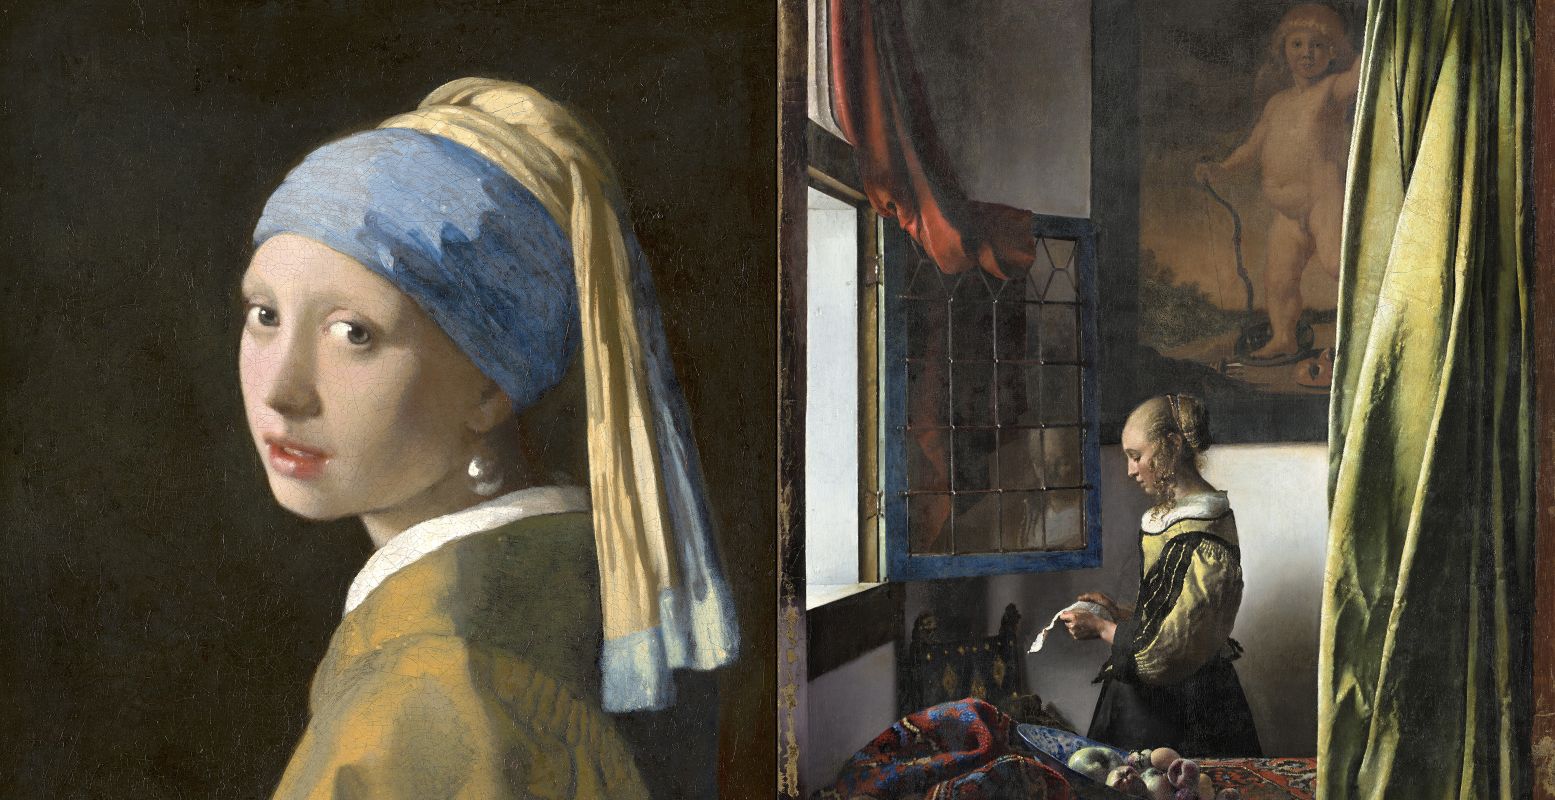 Links: Johannes Vermeer, Meisje met de parel, 1665. Foto: Mauritshuis, Den Haag. Rechts: Johannes Vermeer, Brieflezend meisje bij het venster, ca. 1657 - 1659. Foto: Gemäldegalerie Alte Meister, Dresden